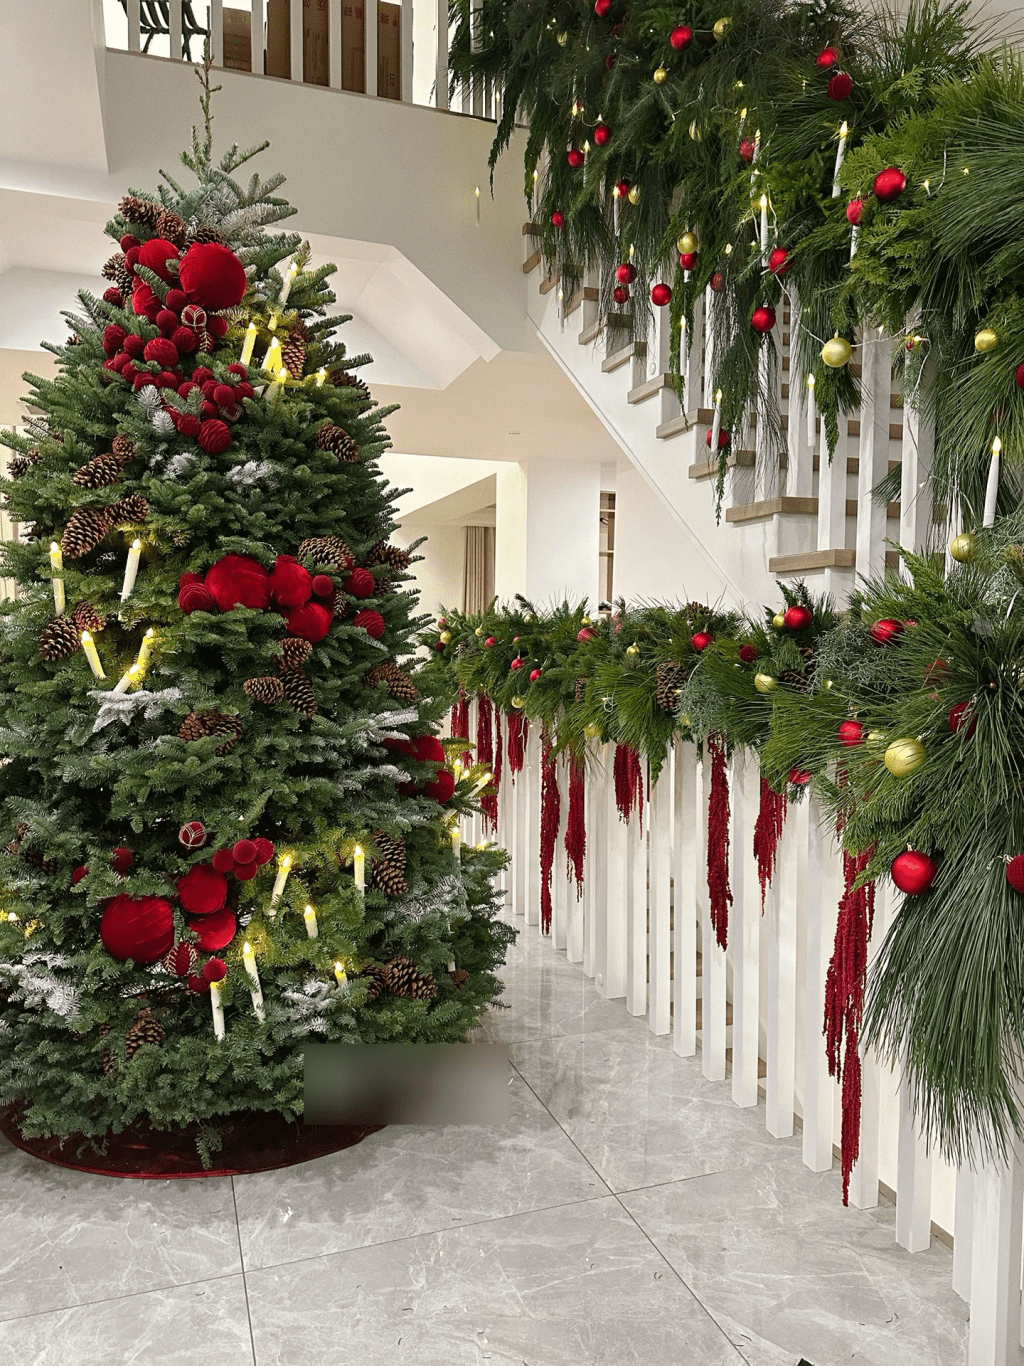 室内装潢主要走纯白简约风，走廊位置摆放了一棵逾两米高的巨型圣诞树，但依然未掂到天花，可见楼底极之高。